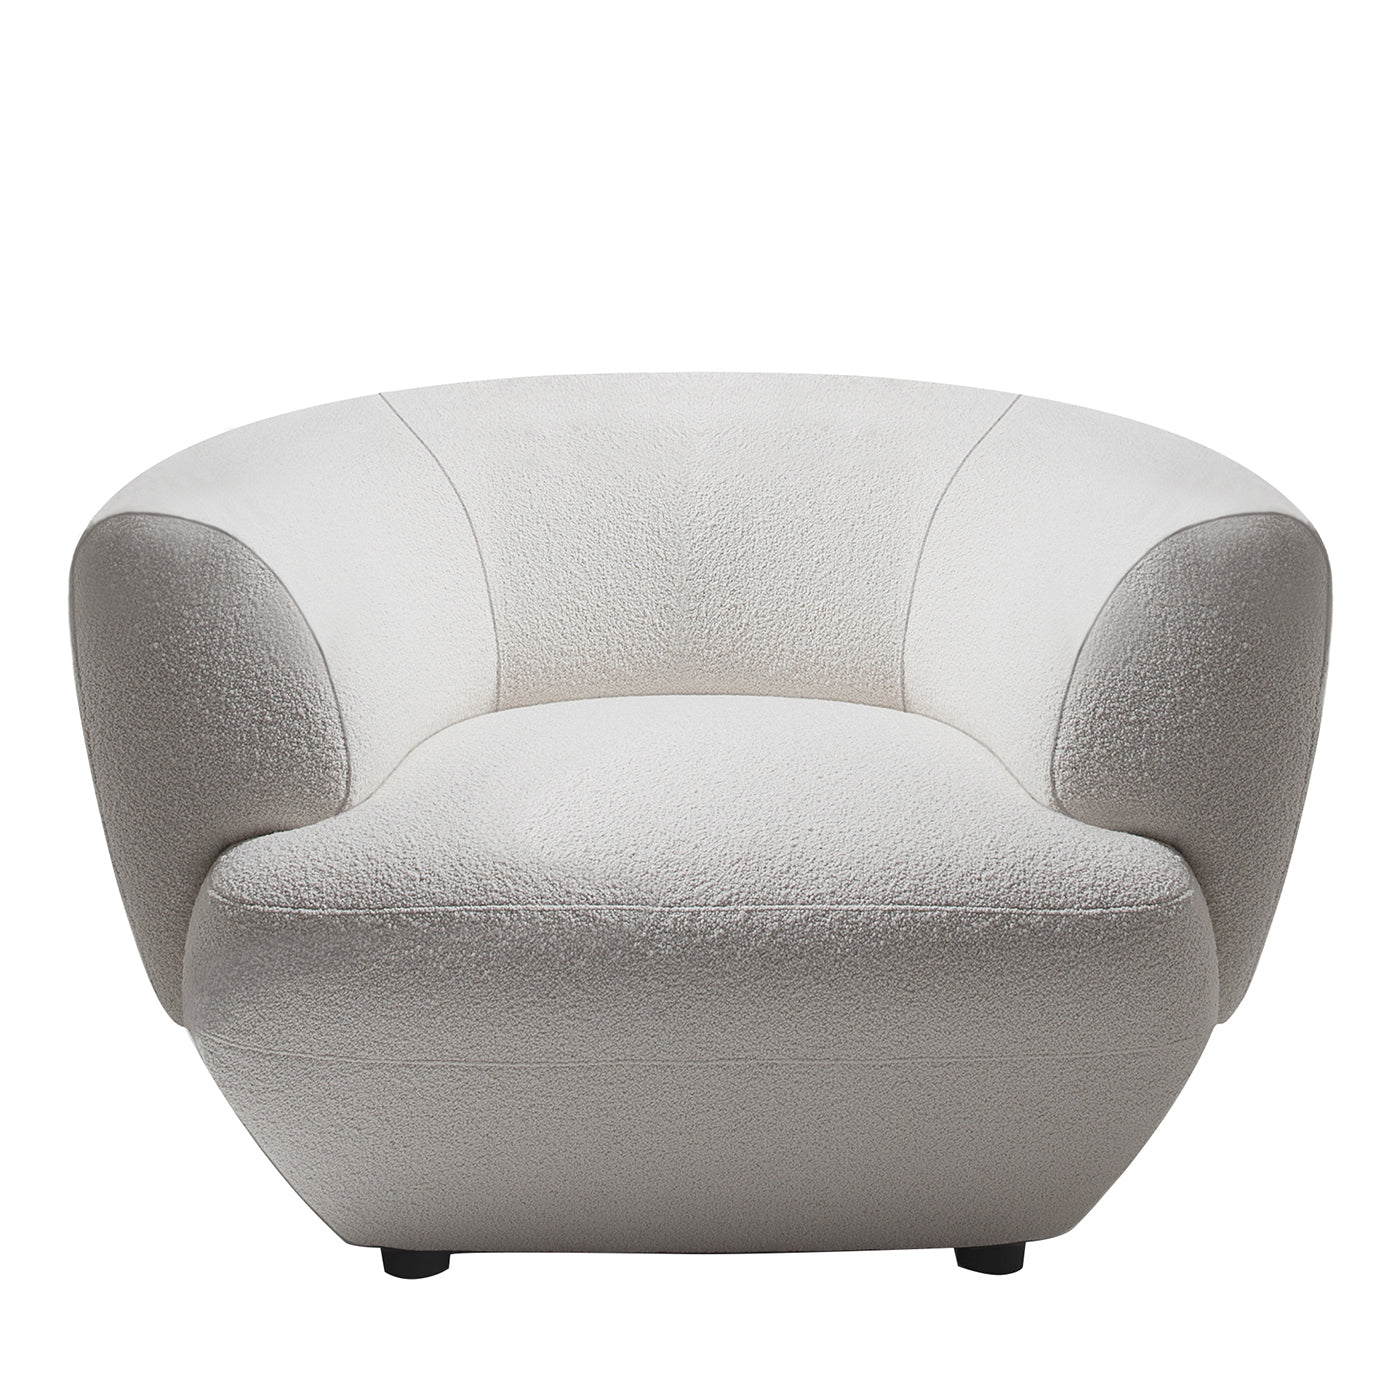 Confident 360 White Armchair by Gianluigi Landoni - Main view